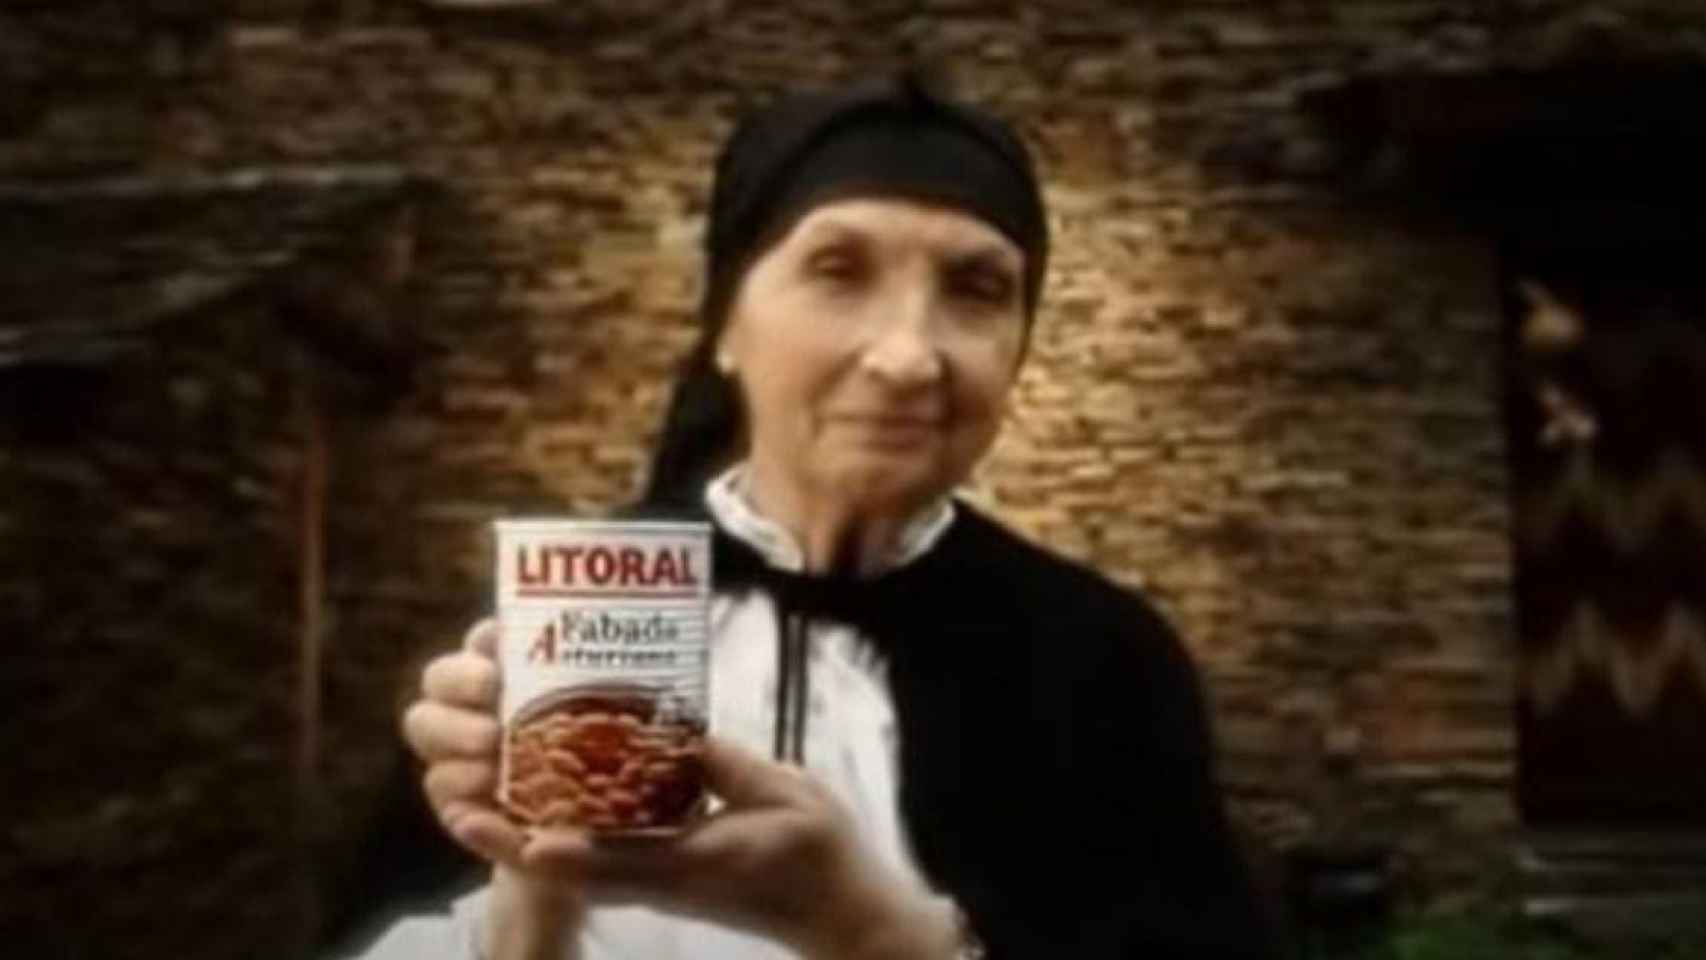 La abuela de la fabada Litoral, María Antonia Goás / YOUTUBE